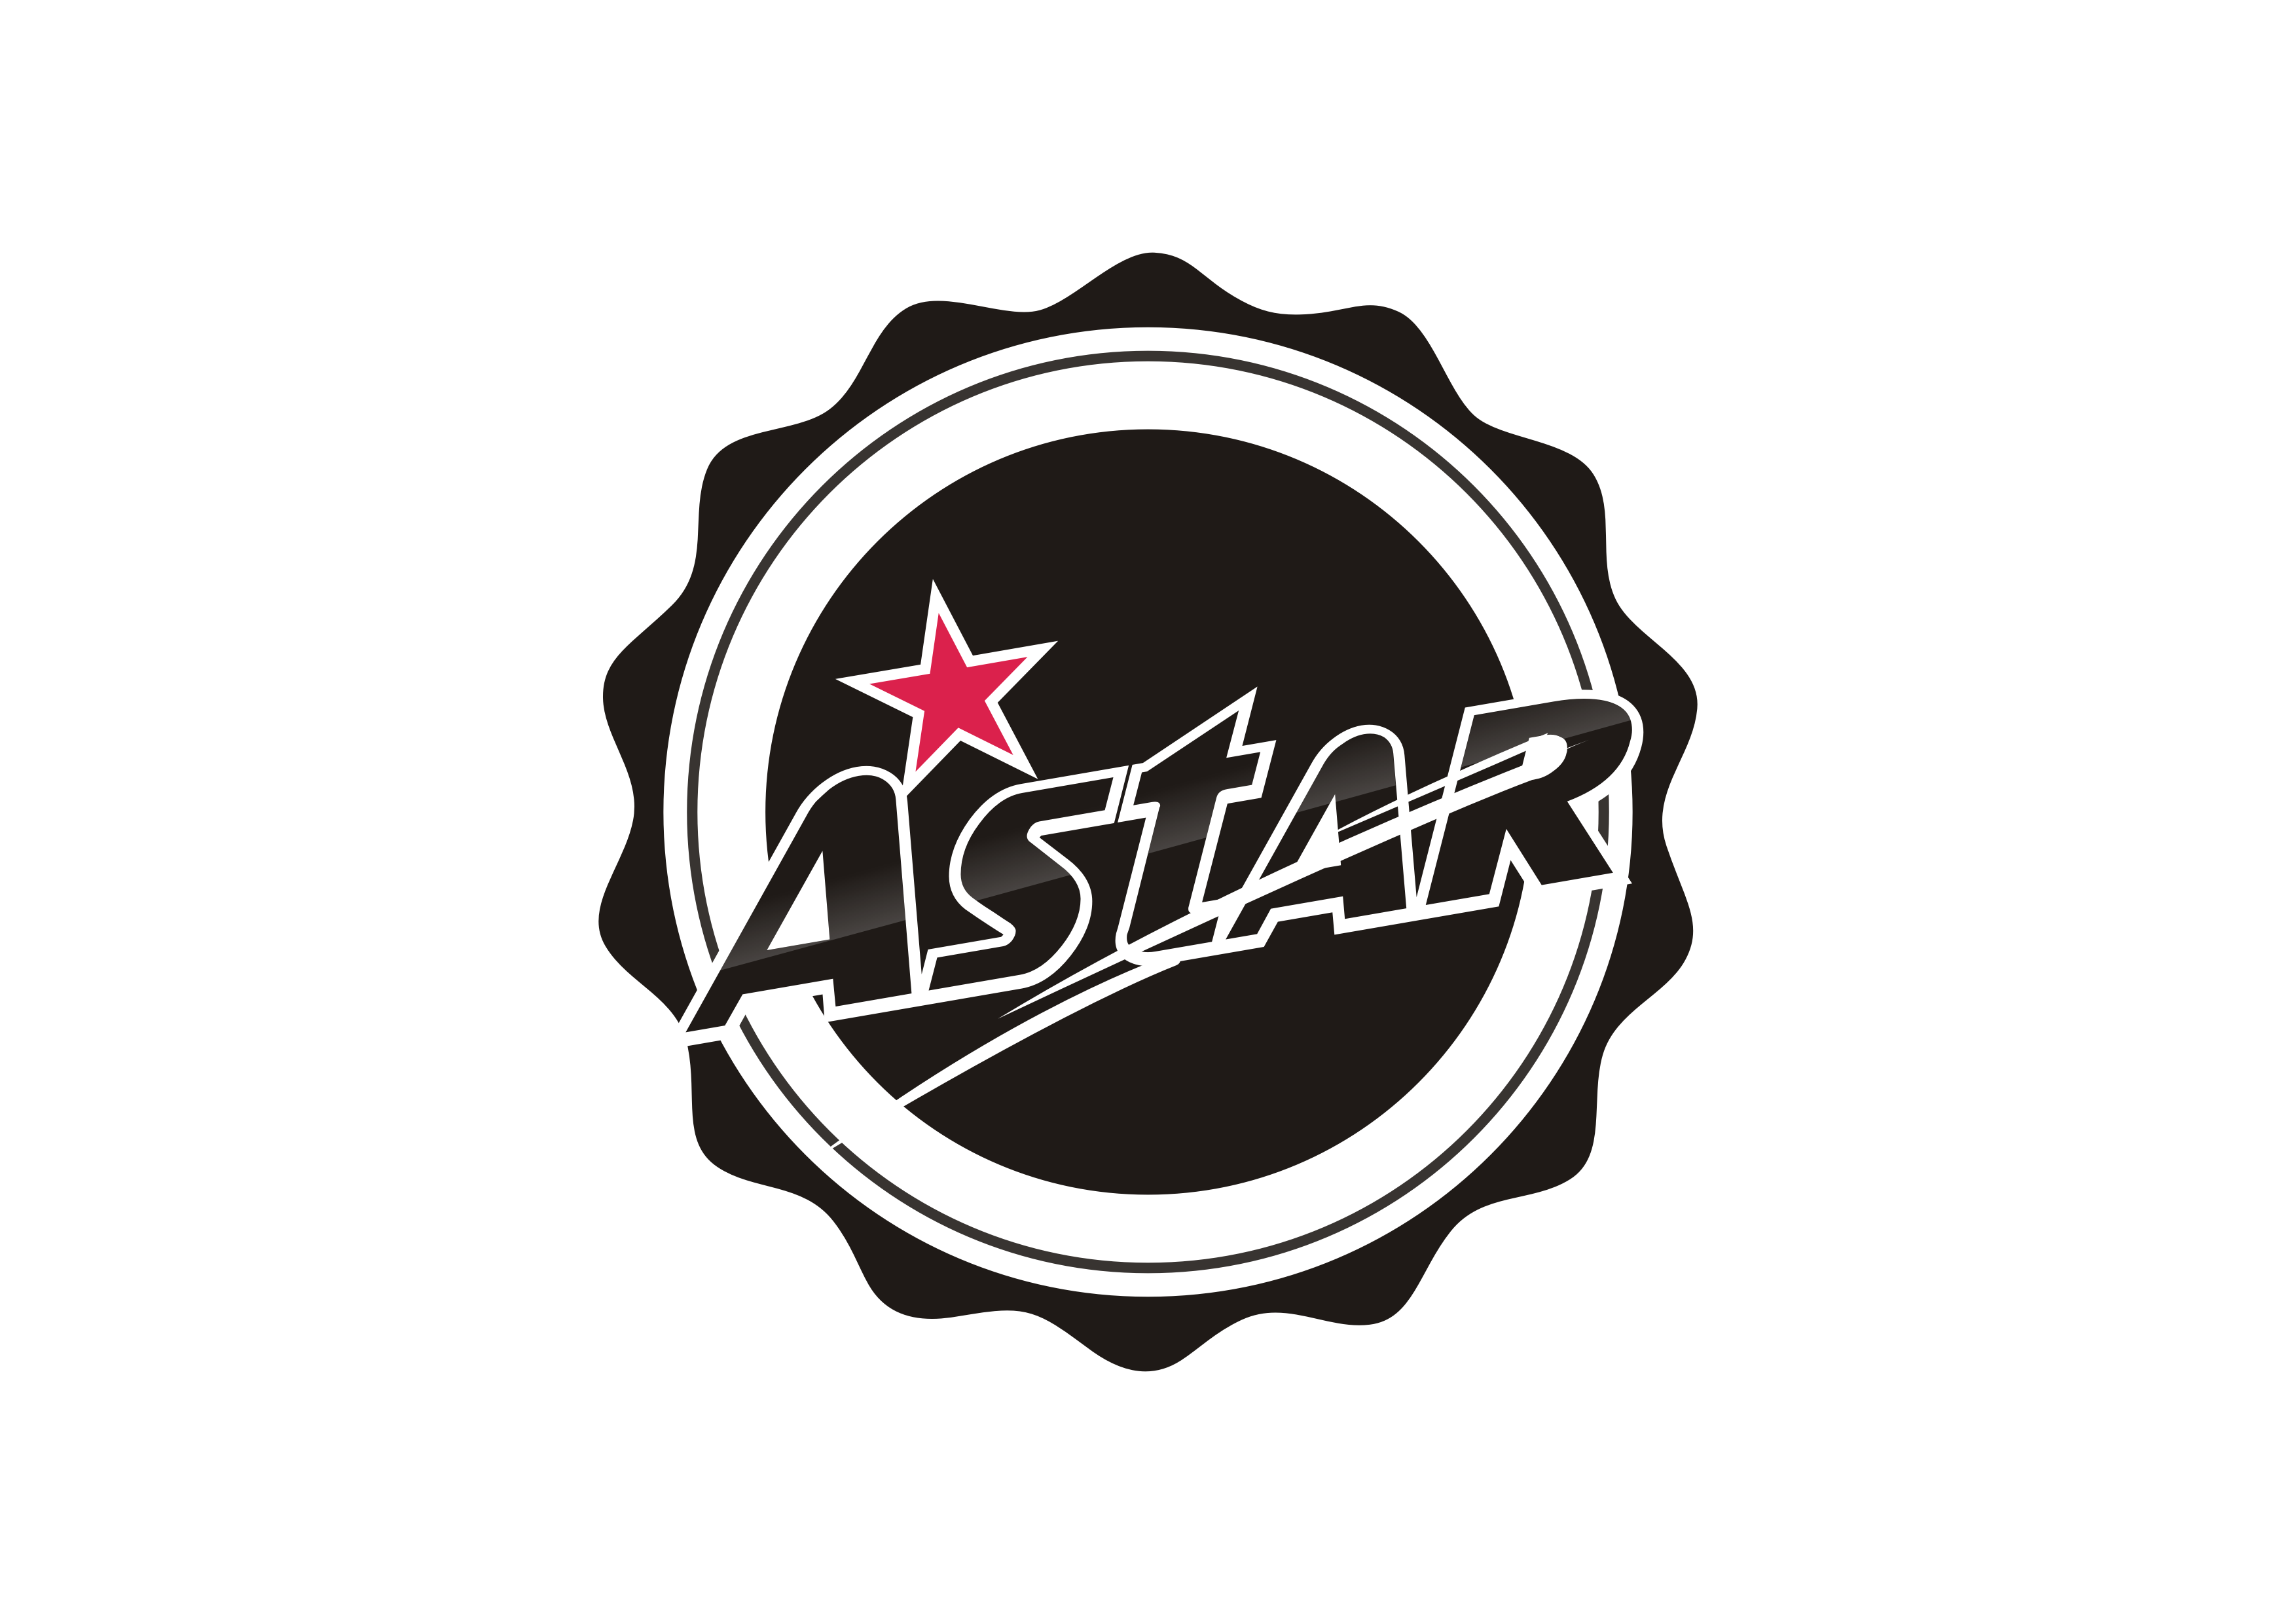 Astar Gaming